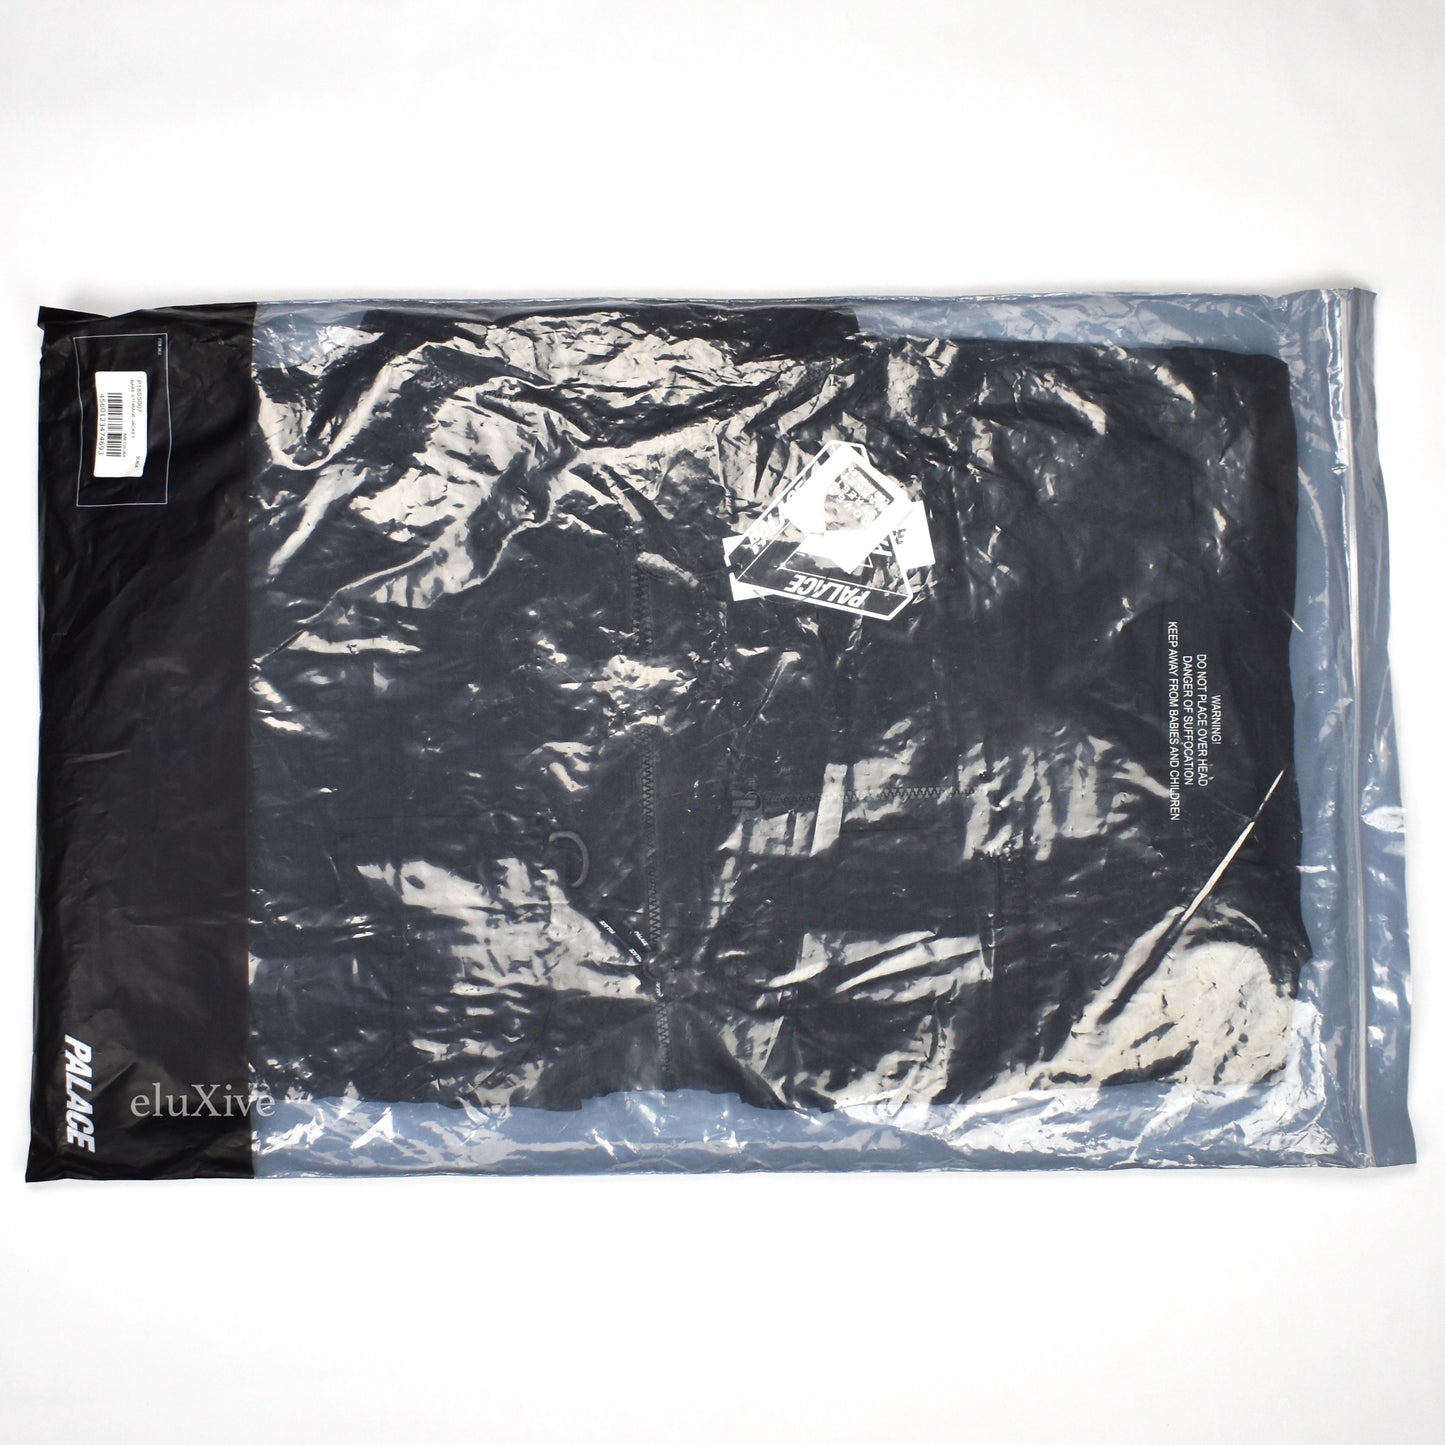 Palace - Bare Storage Logo Jacket (Black)